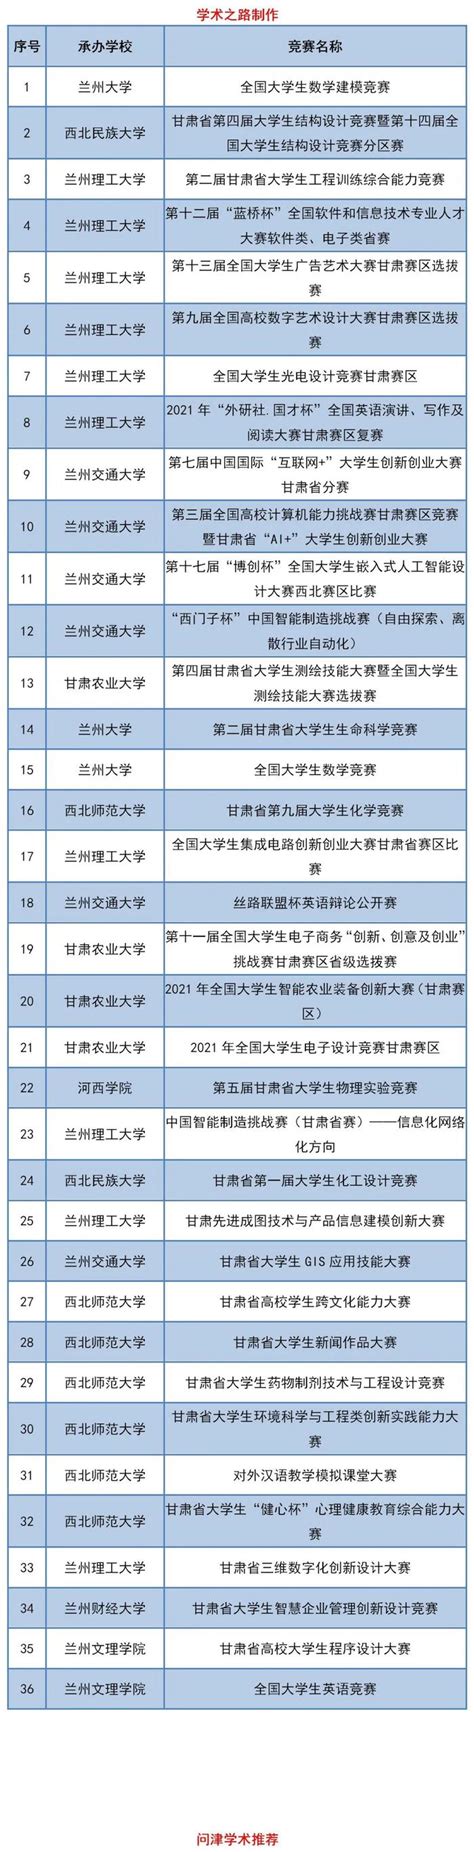 甘肃省教育厅关于2021年省级大学生学科专业竞赛项目的公示